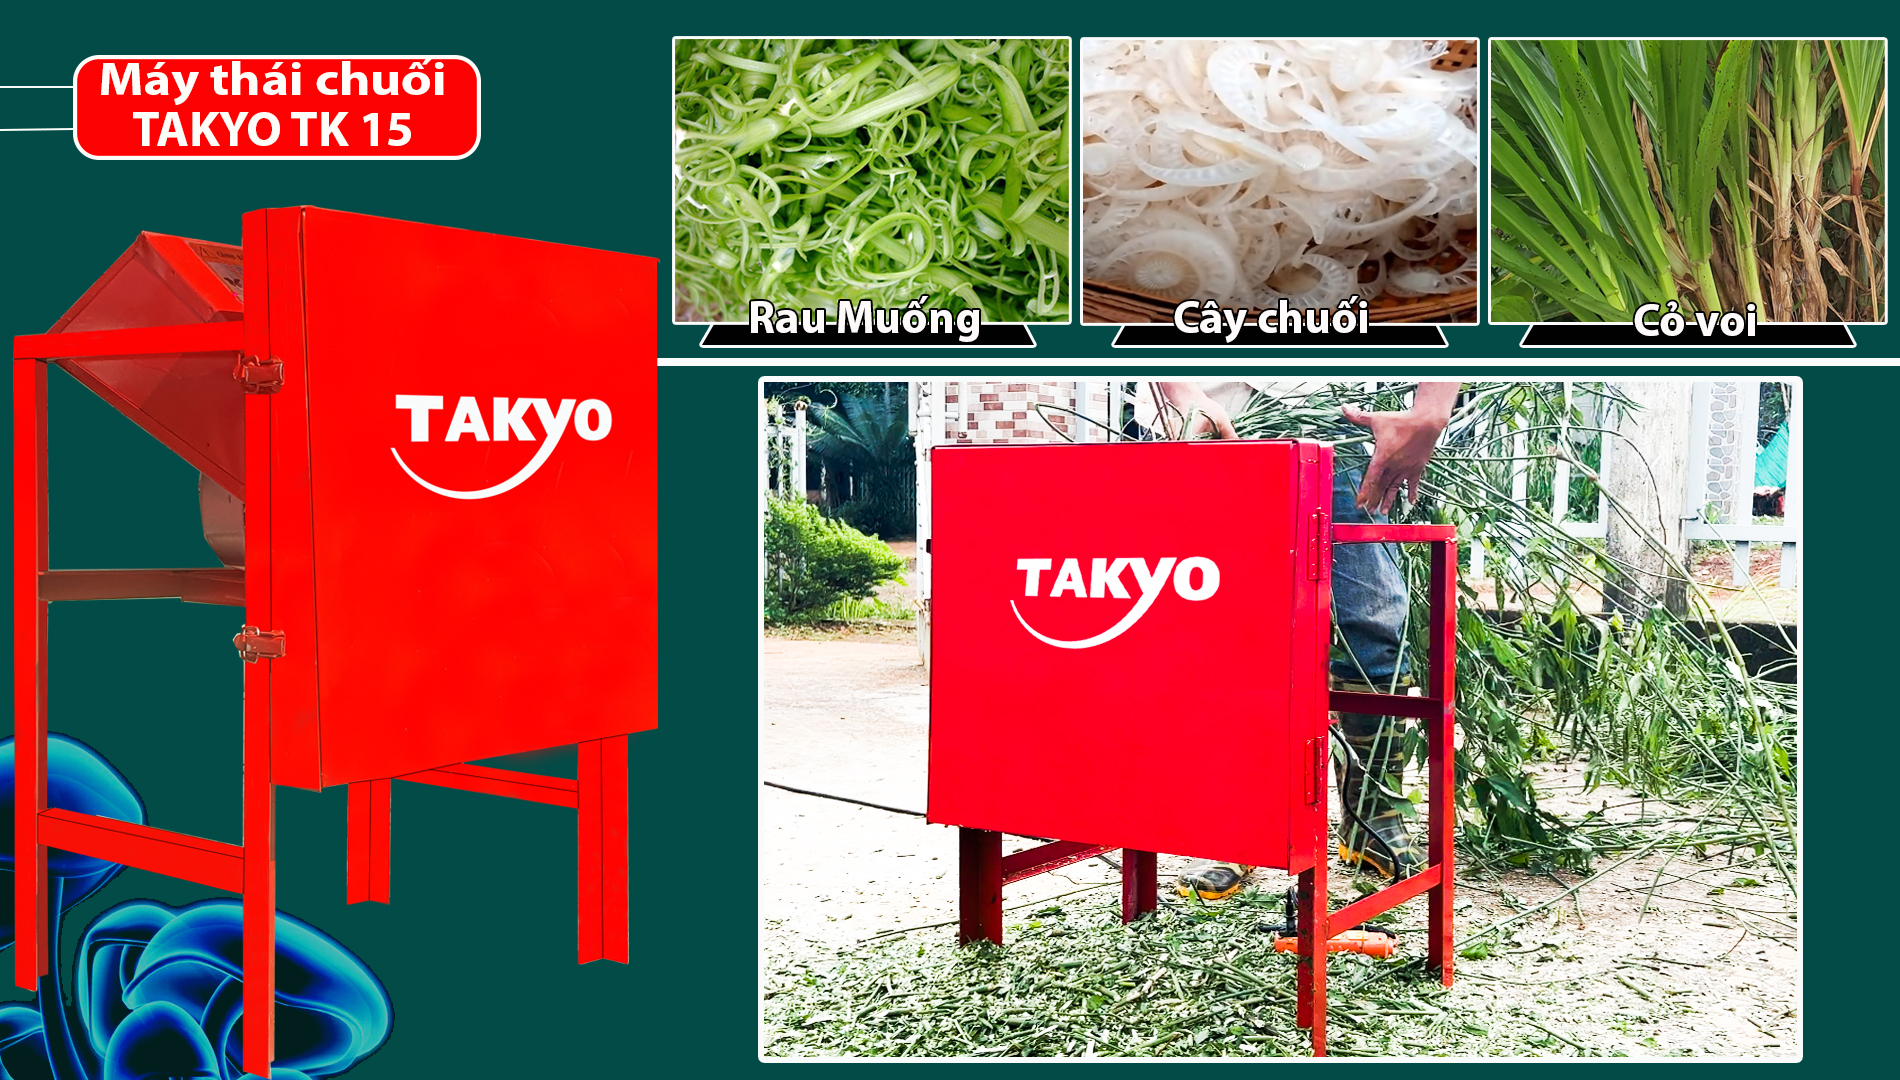 Máy thái cỏ Takyo TK 15